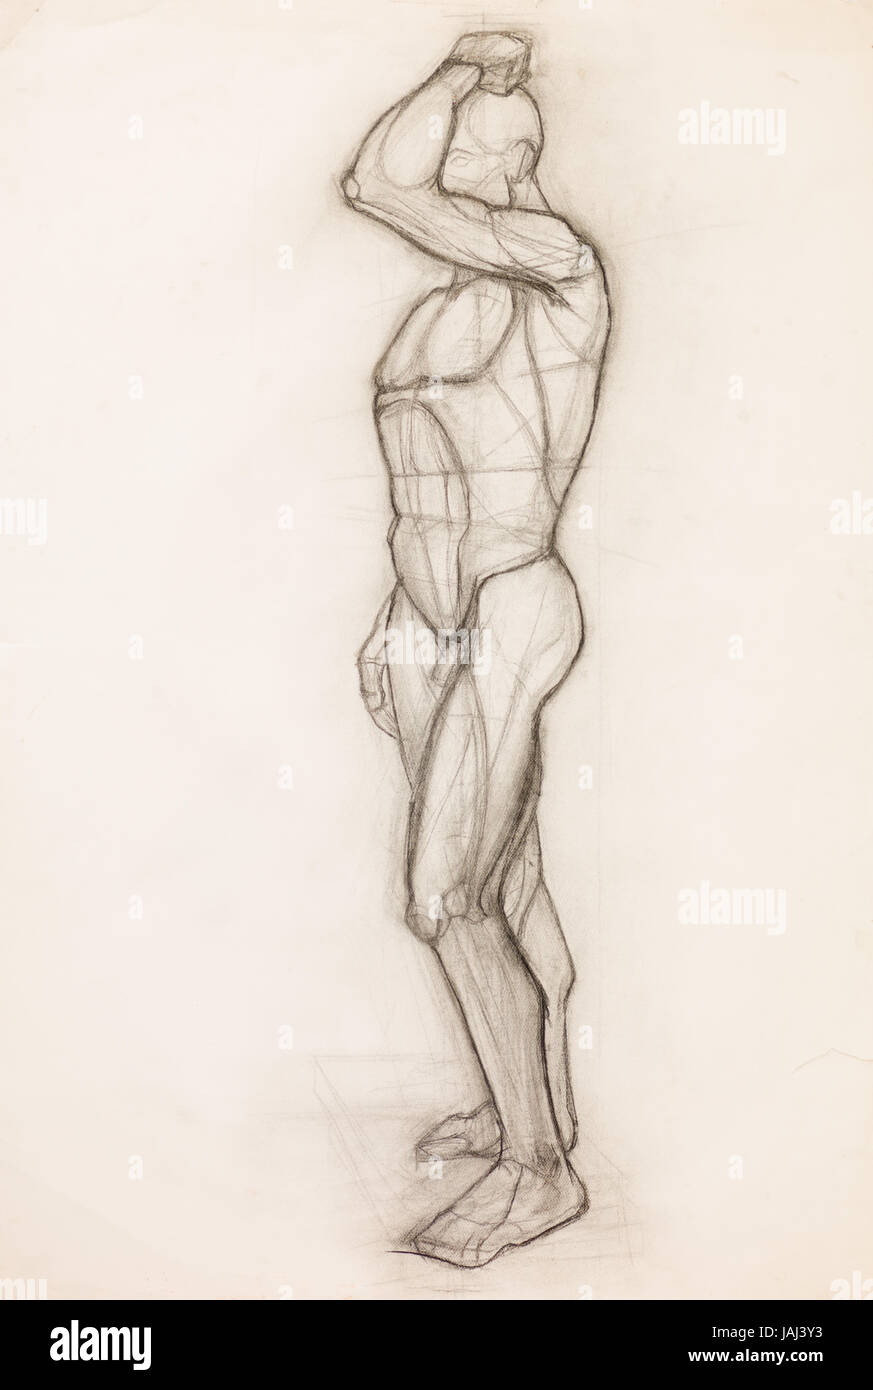 Disegnata A Mano Schizzo A Matita Che Illustra Il Corpo Umano I Muscoli Anatomia Foto Stock Alamy